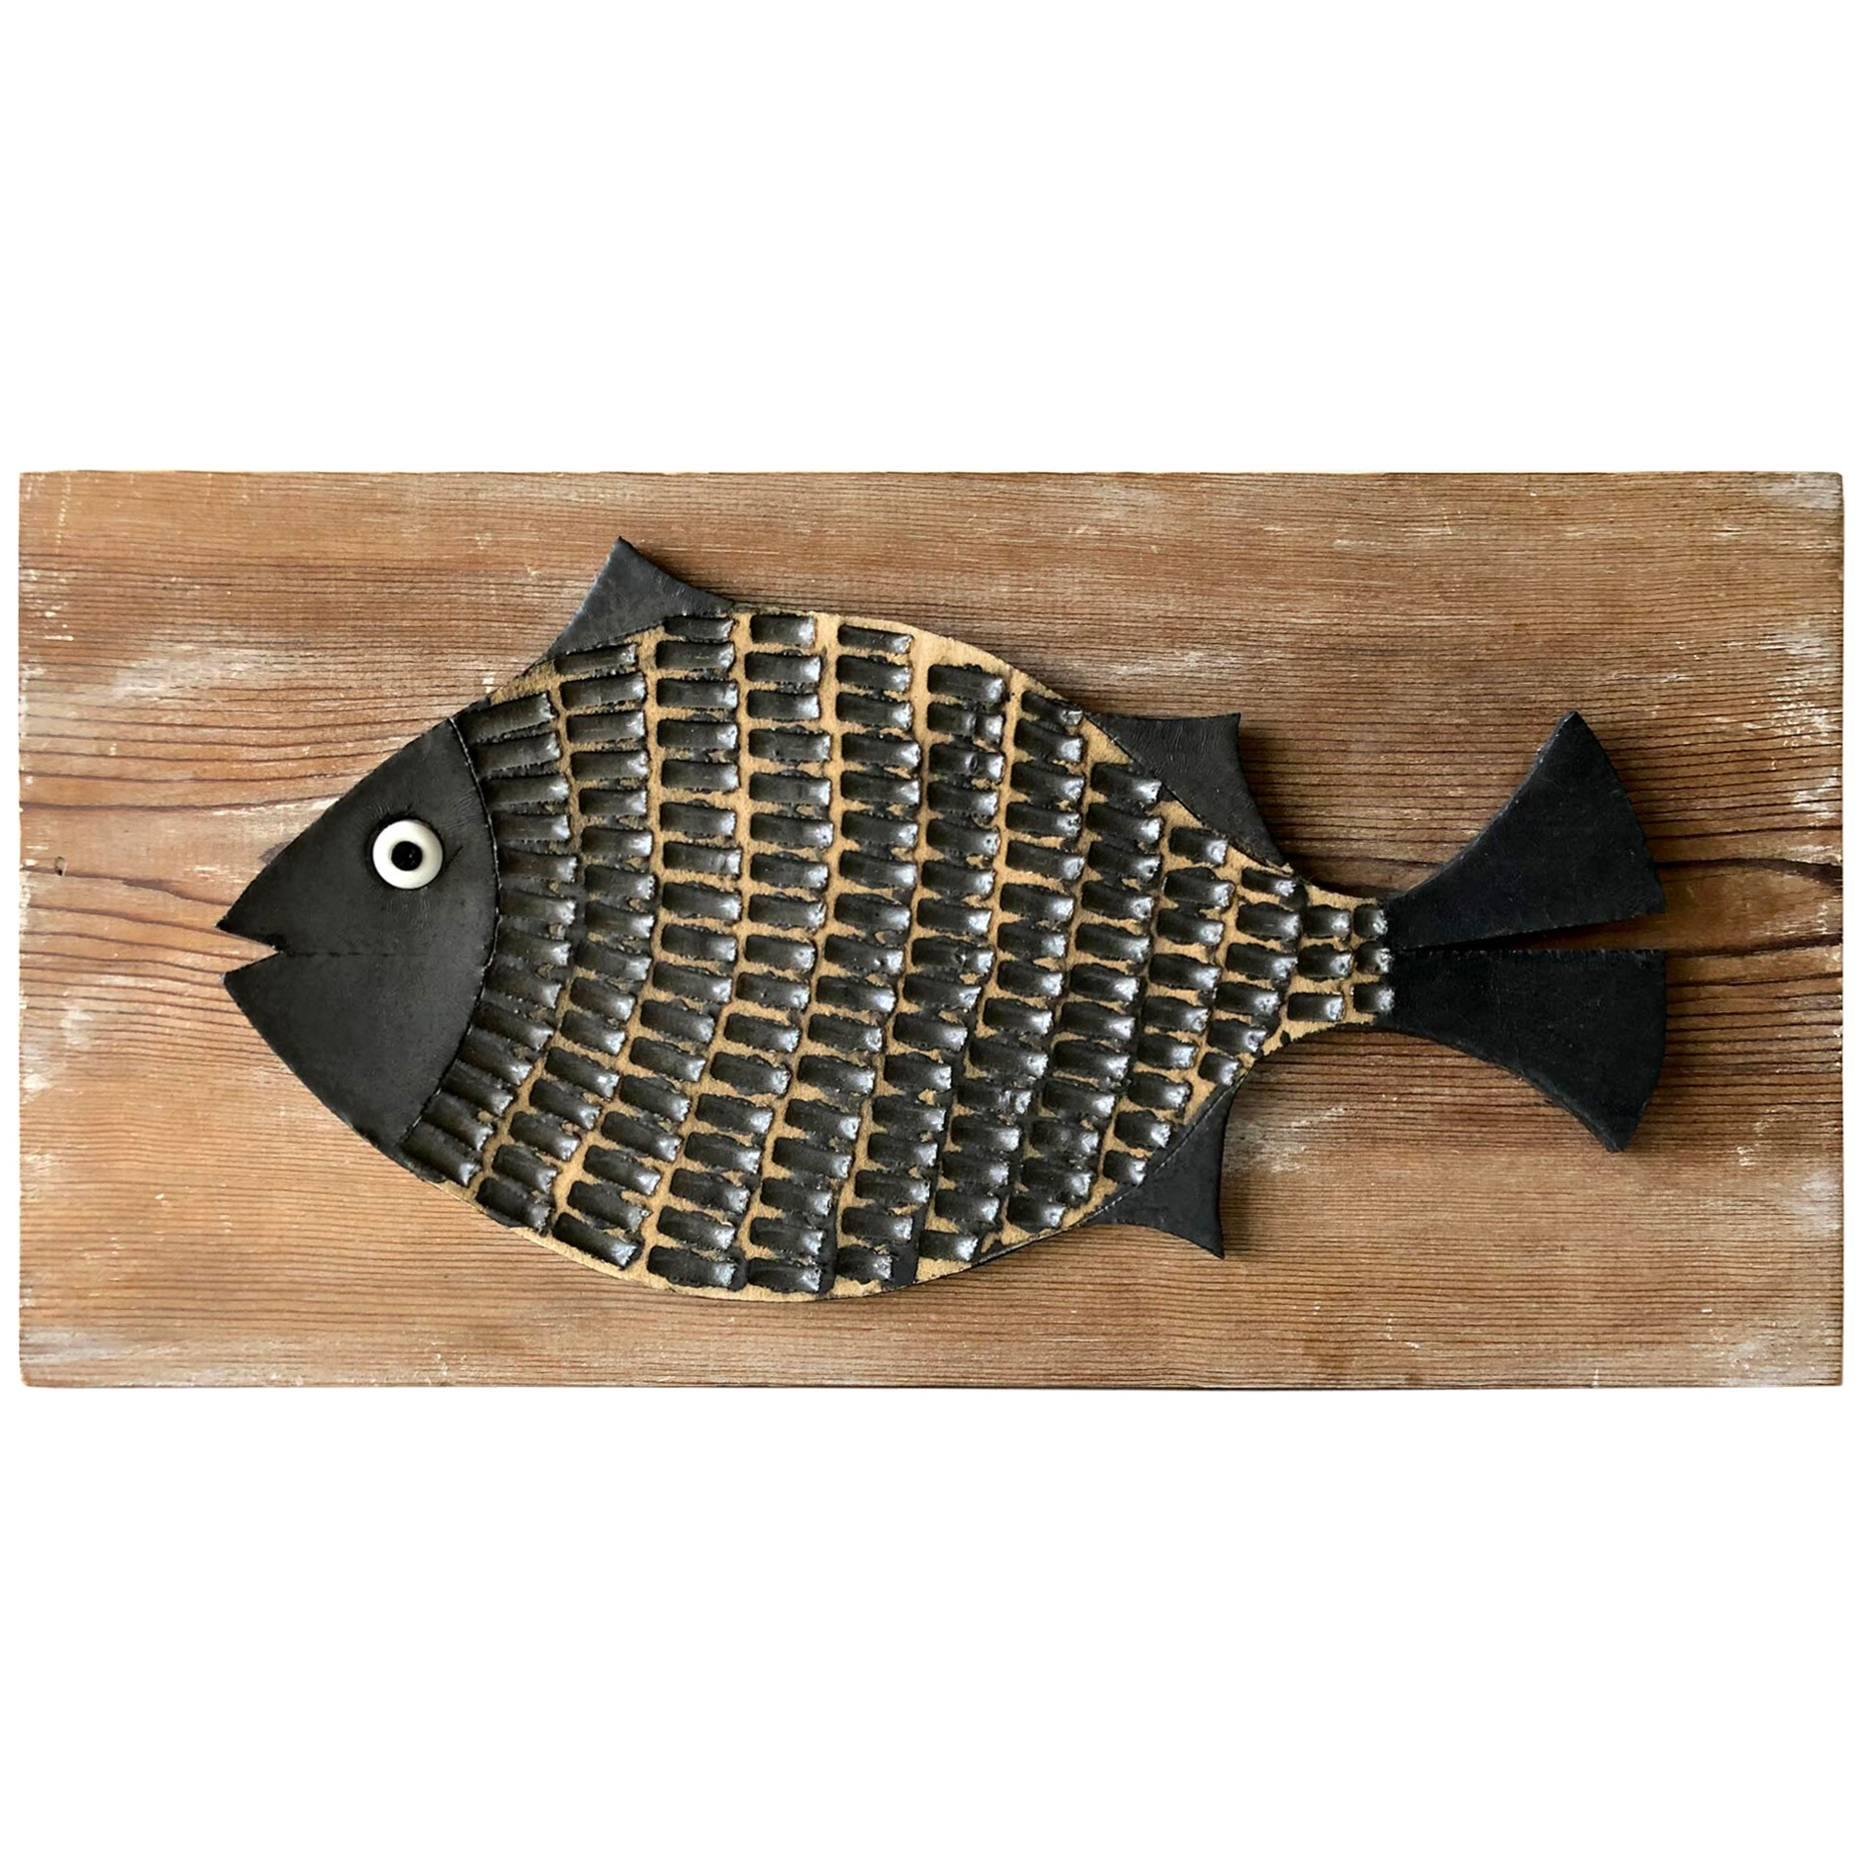 Doyle Lane California Studio Ceramic Fish Plaque Sculpture